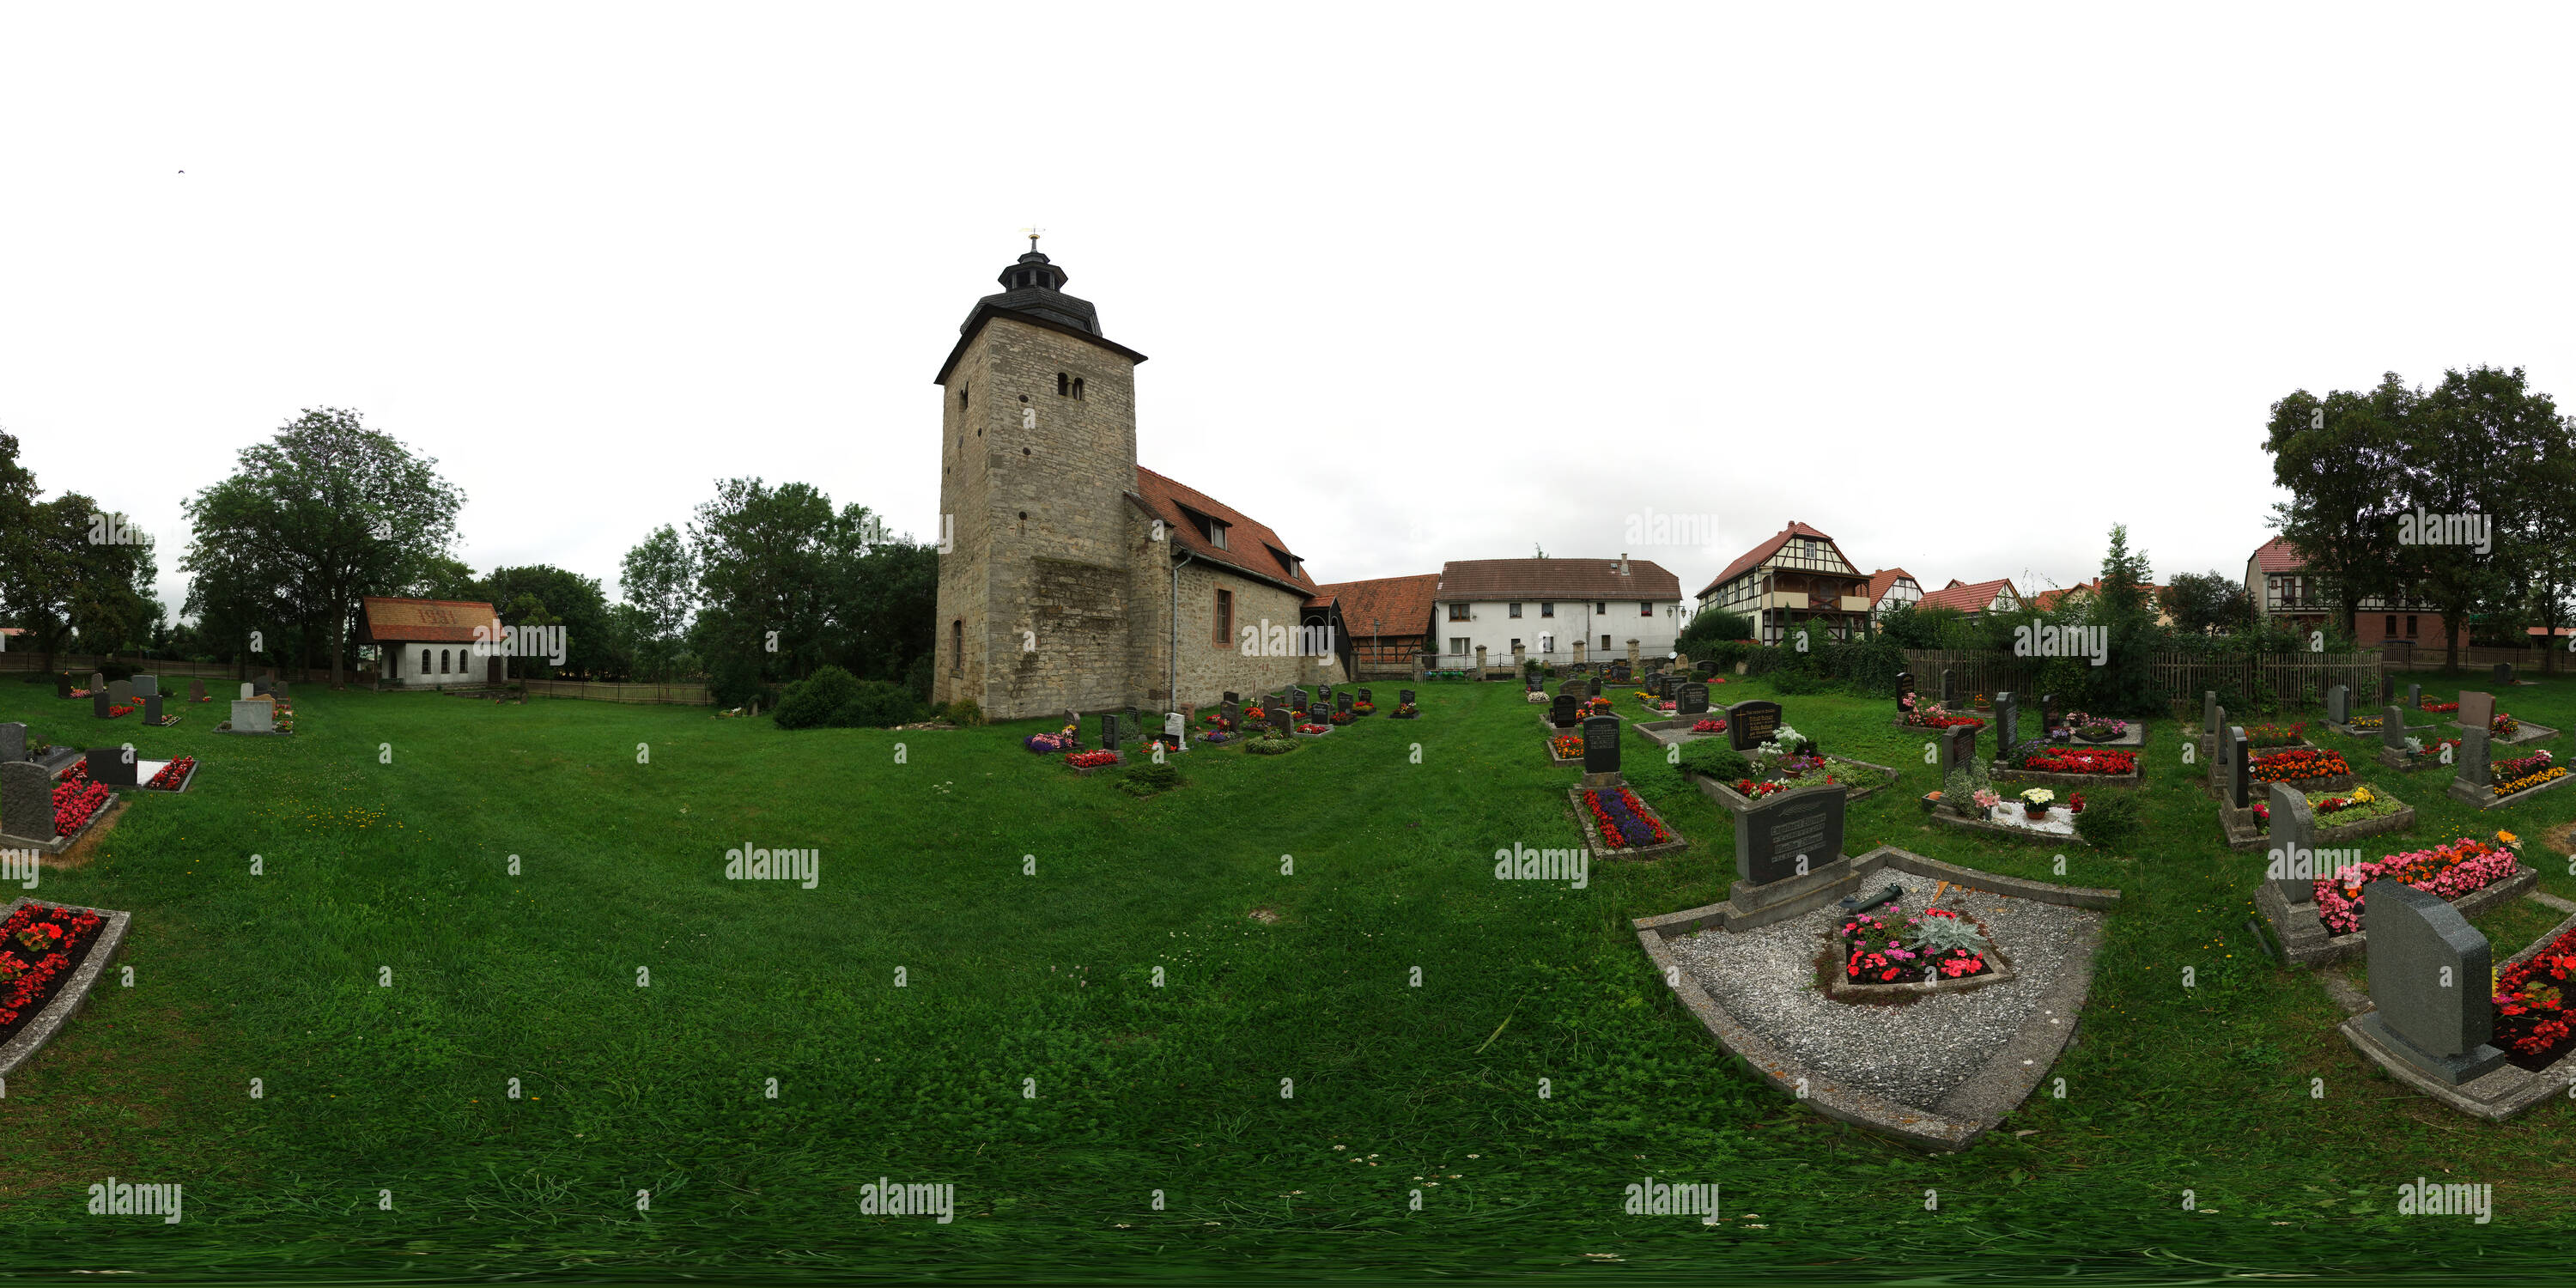 360 degree panoramic view of -Rittersdorf- Kirche